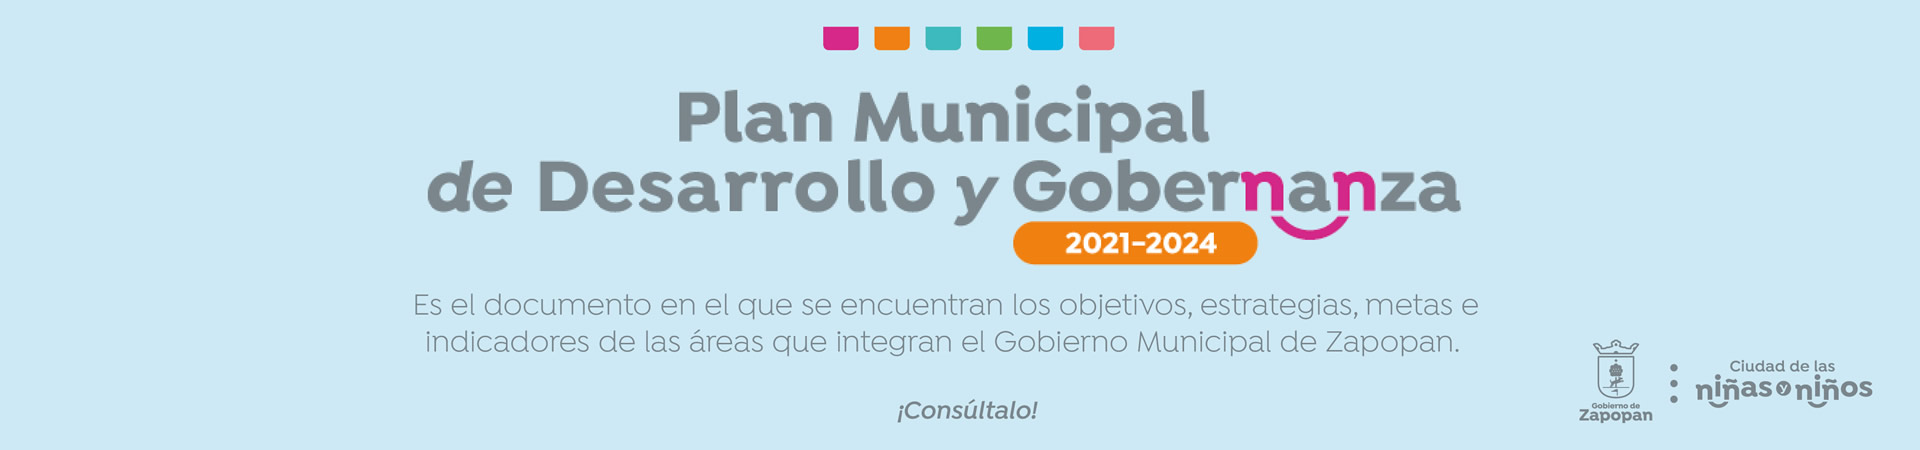  Consulta el Plan Municipal de Desarrollo y Gobernanza